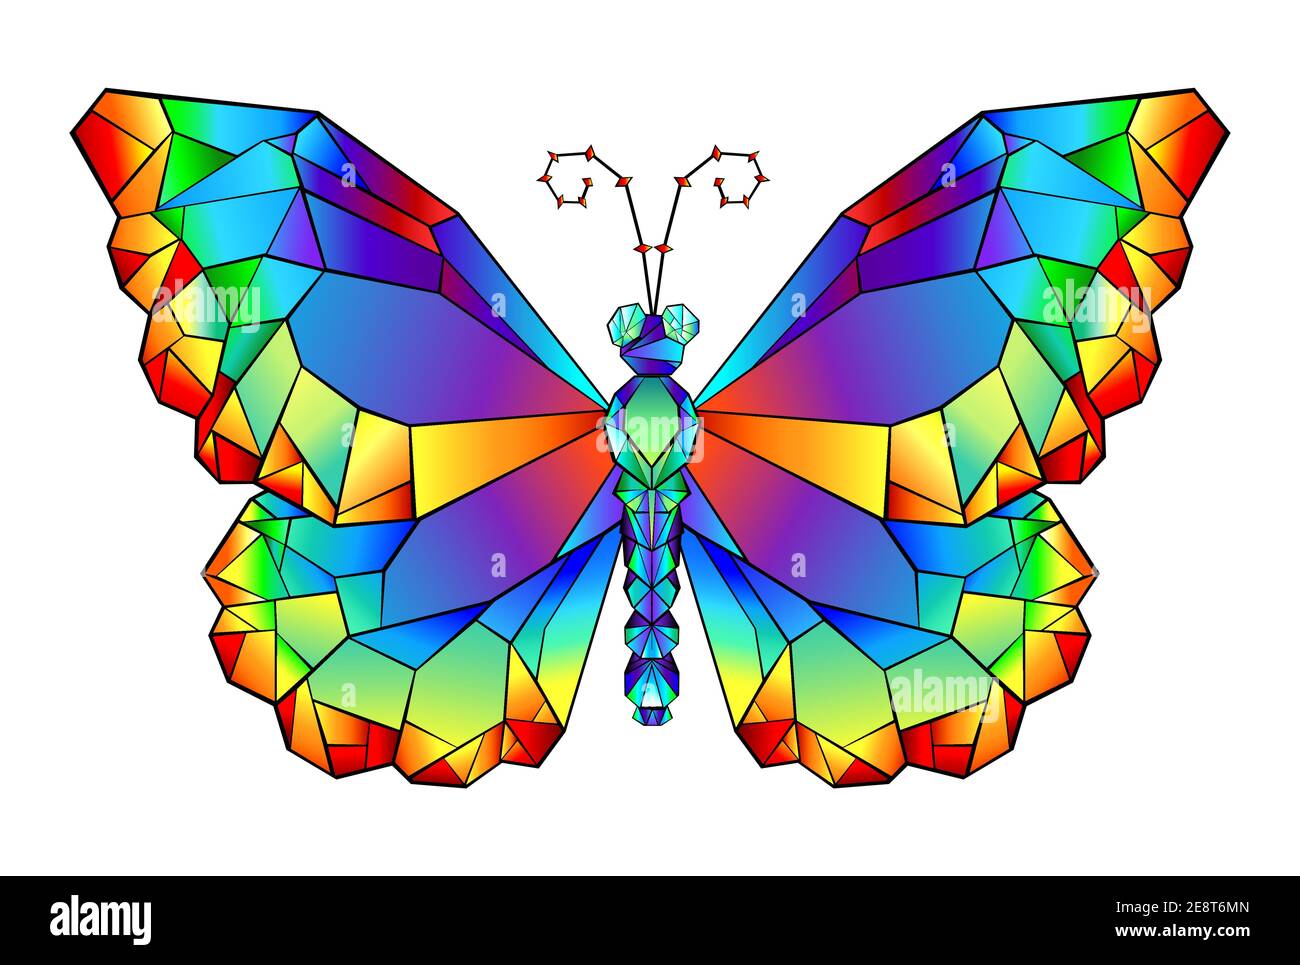 Farfalla poligonale dipinta con vibranti colori arcobaleno su sfondo bianco. Origami arcobaleno. Illustrazione Vettoriale